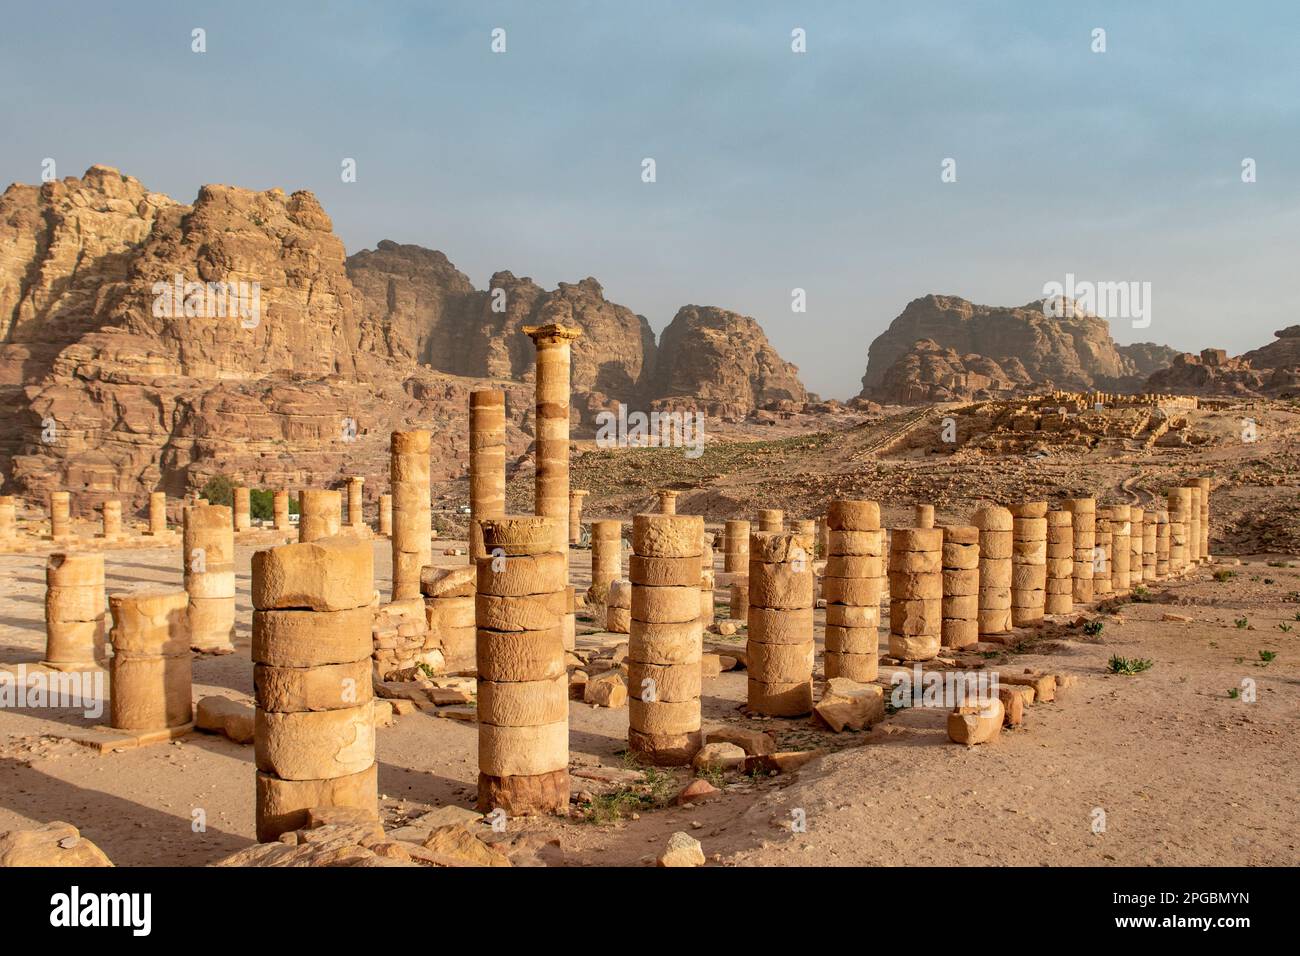 The Great Temple, Petra, Jordan Stock Photo